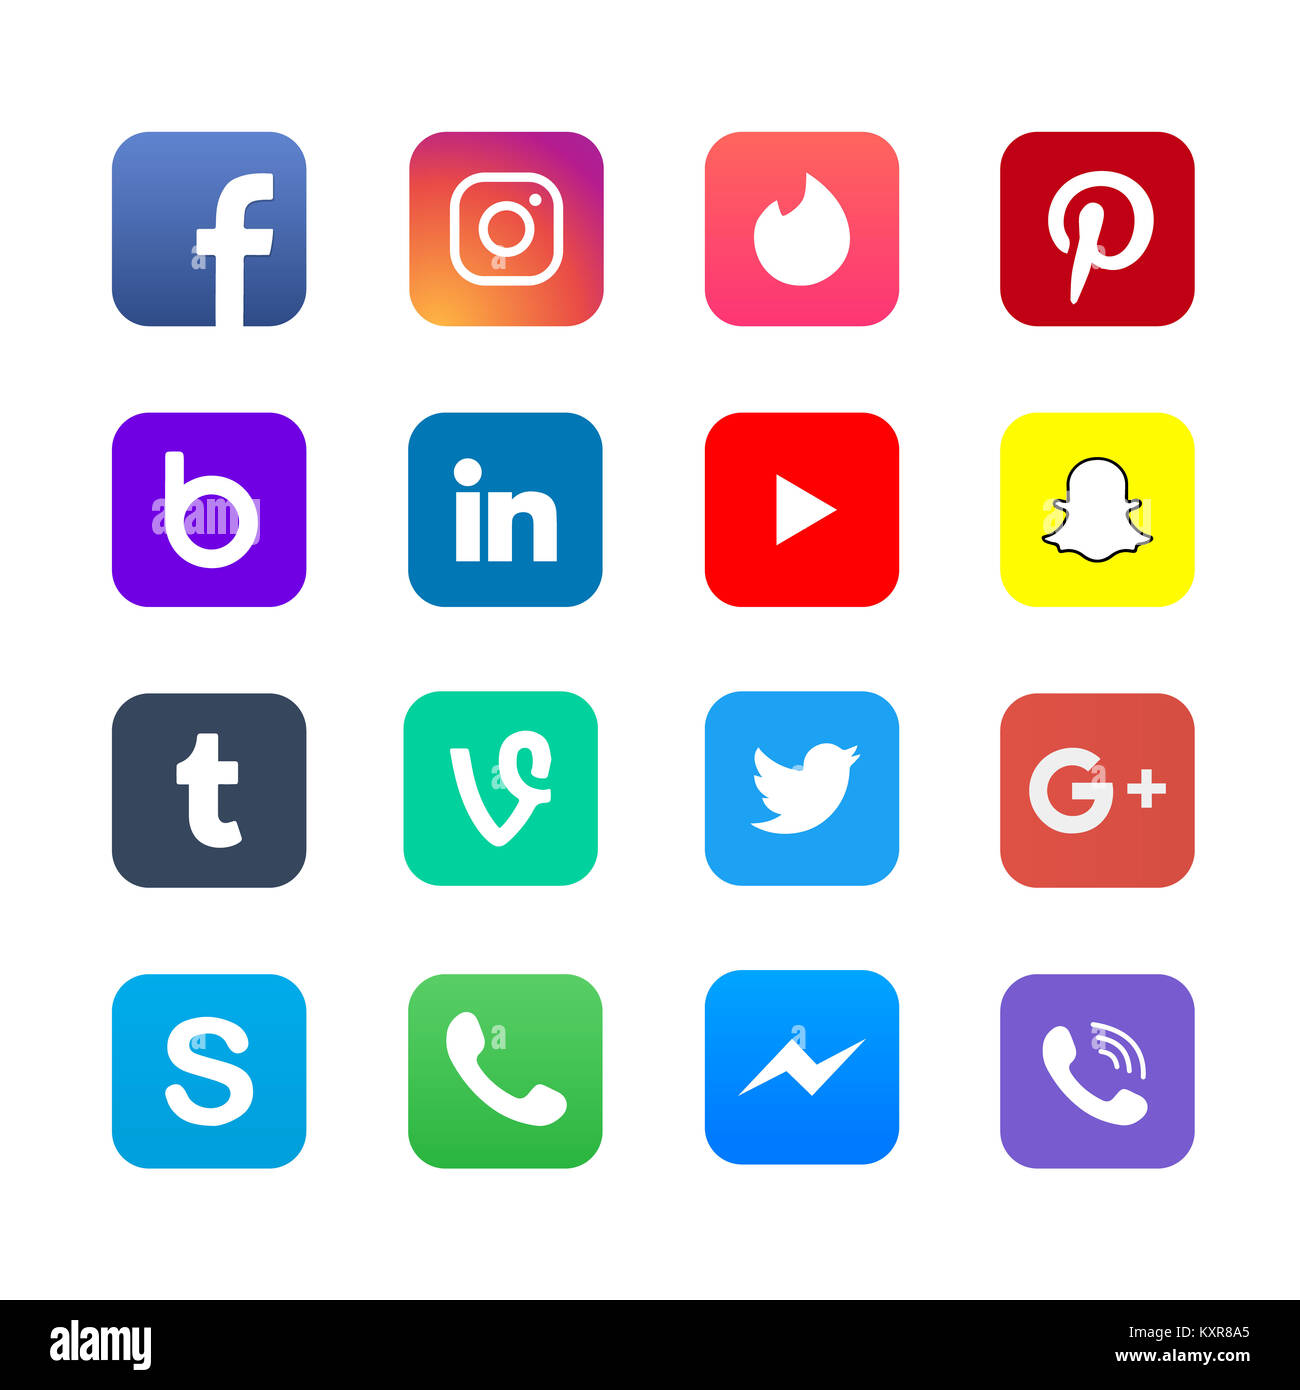 UKRAINE - CHERKASY JANUARY 08, 2017 Social media apps icons Stock Photo